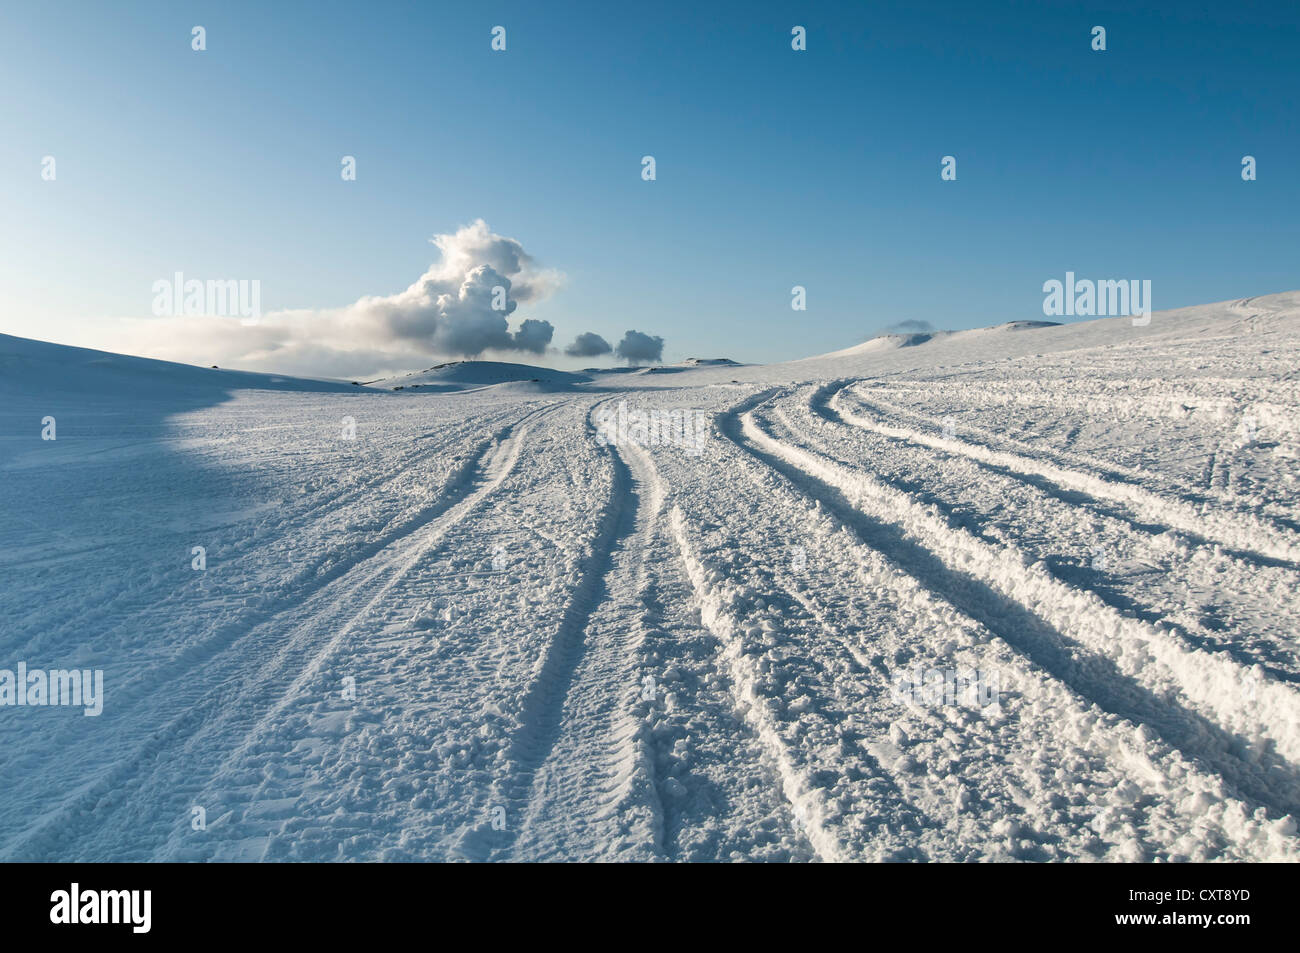 Tracce nella neve e una nuvola di fumo o di cenere dal vulcano Fimmvoerðuháls, Mýrdalsjoekull ghiacciaio, Suðurland, Sud Islanda Foto Stock